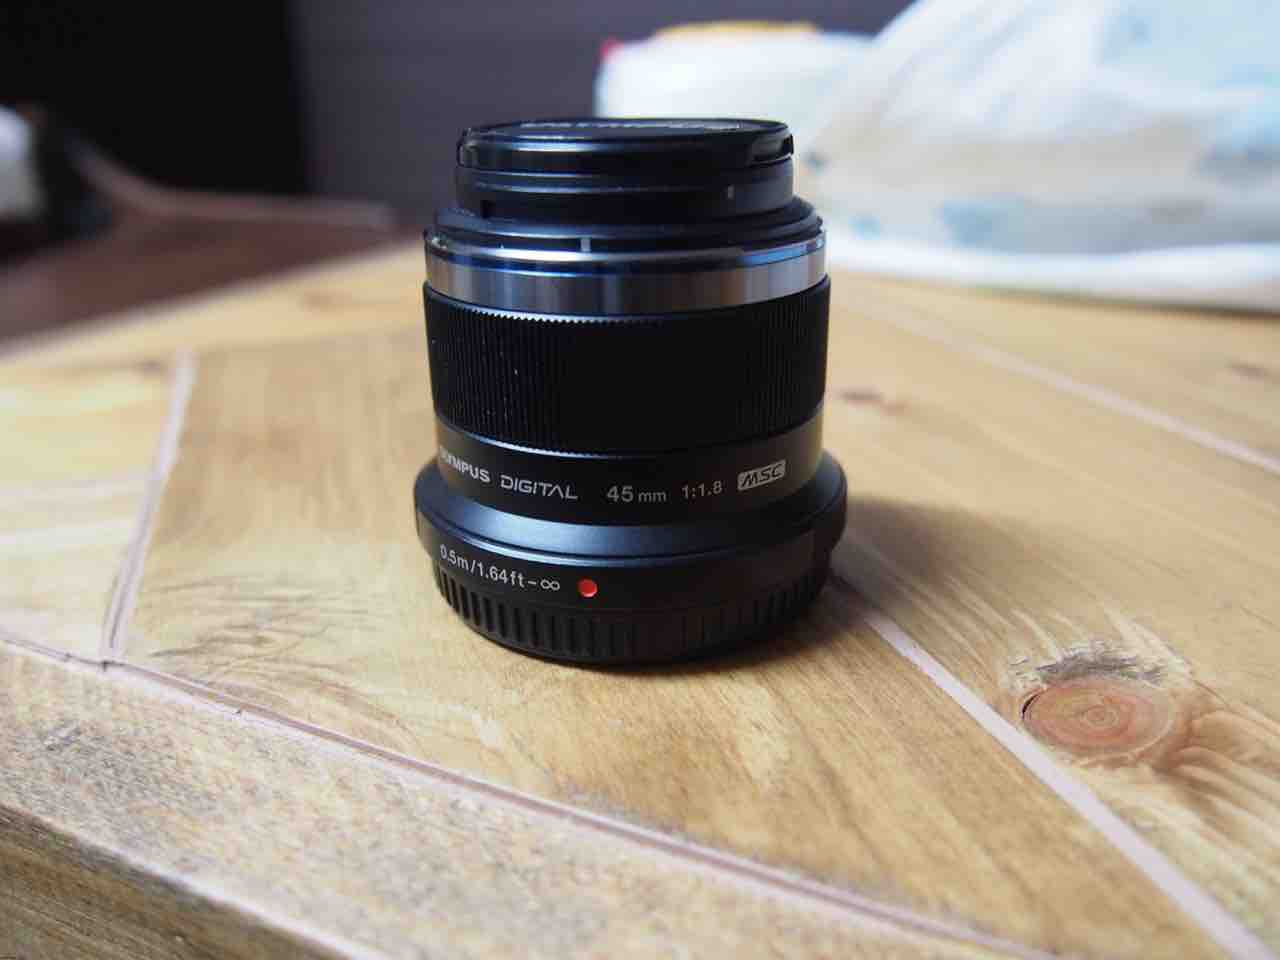 M.ZUIKO DIGITAL 45mm F1.8の単焦点レンズで撮れる写真、撮りづらい 